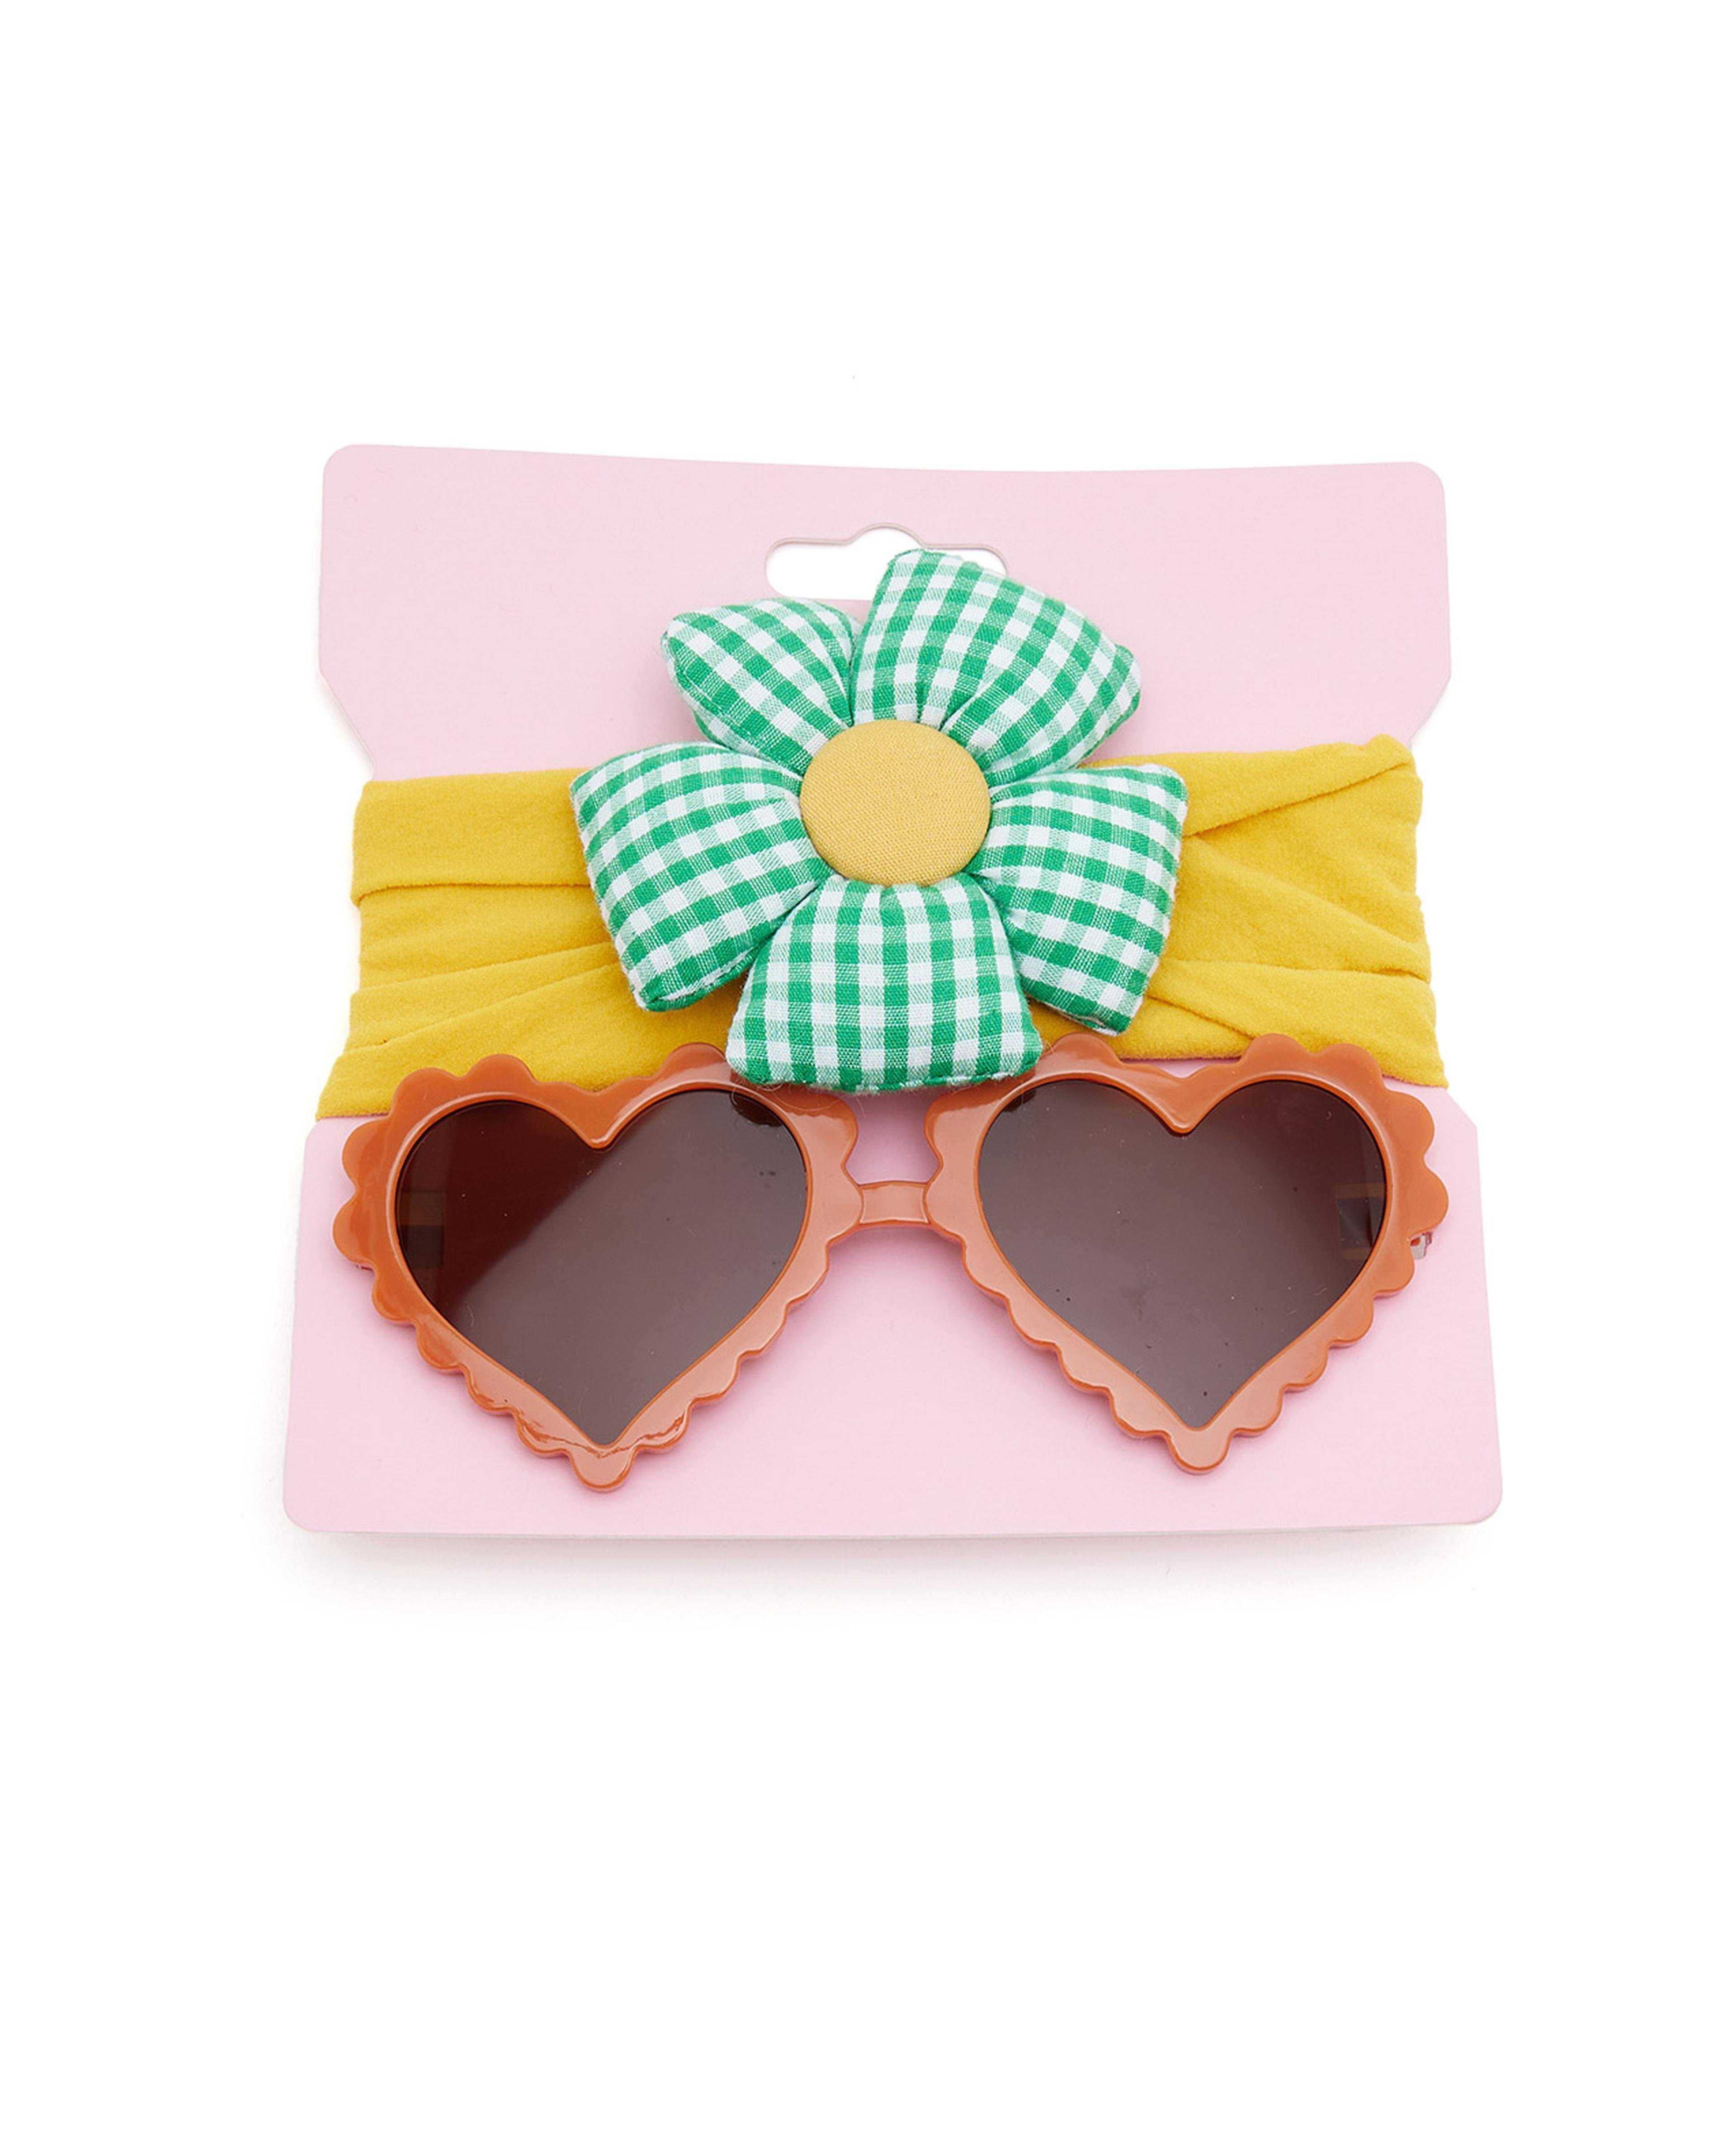 2 Piece Sunglasses and Headband Set